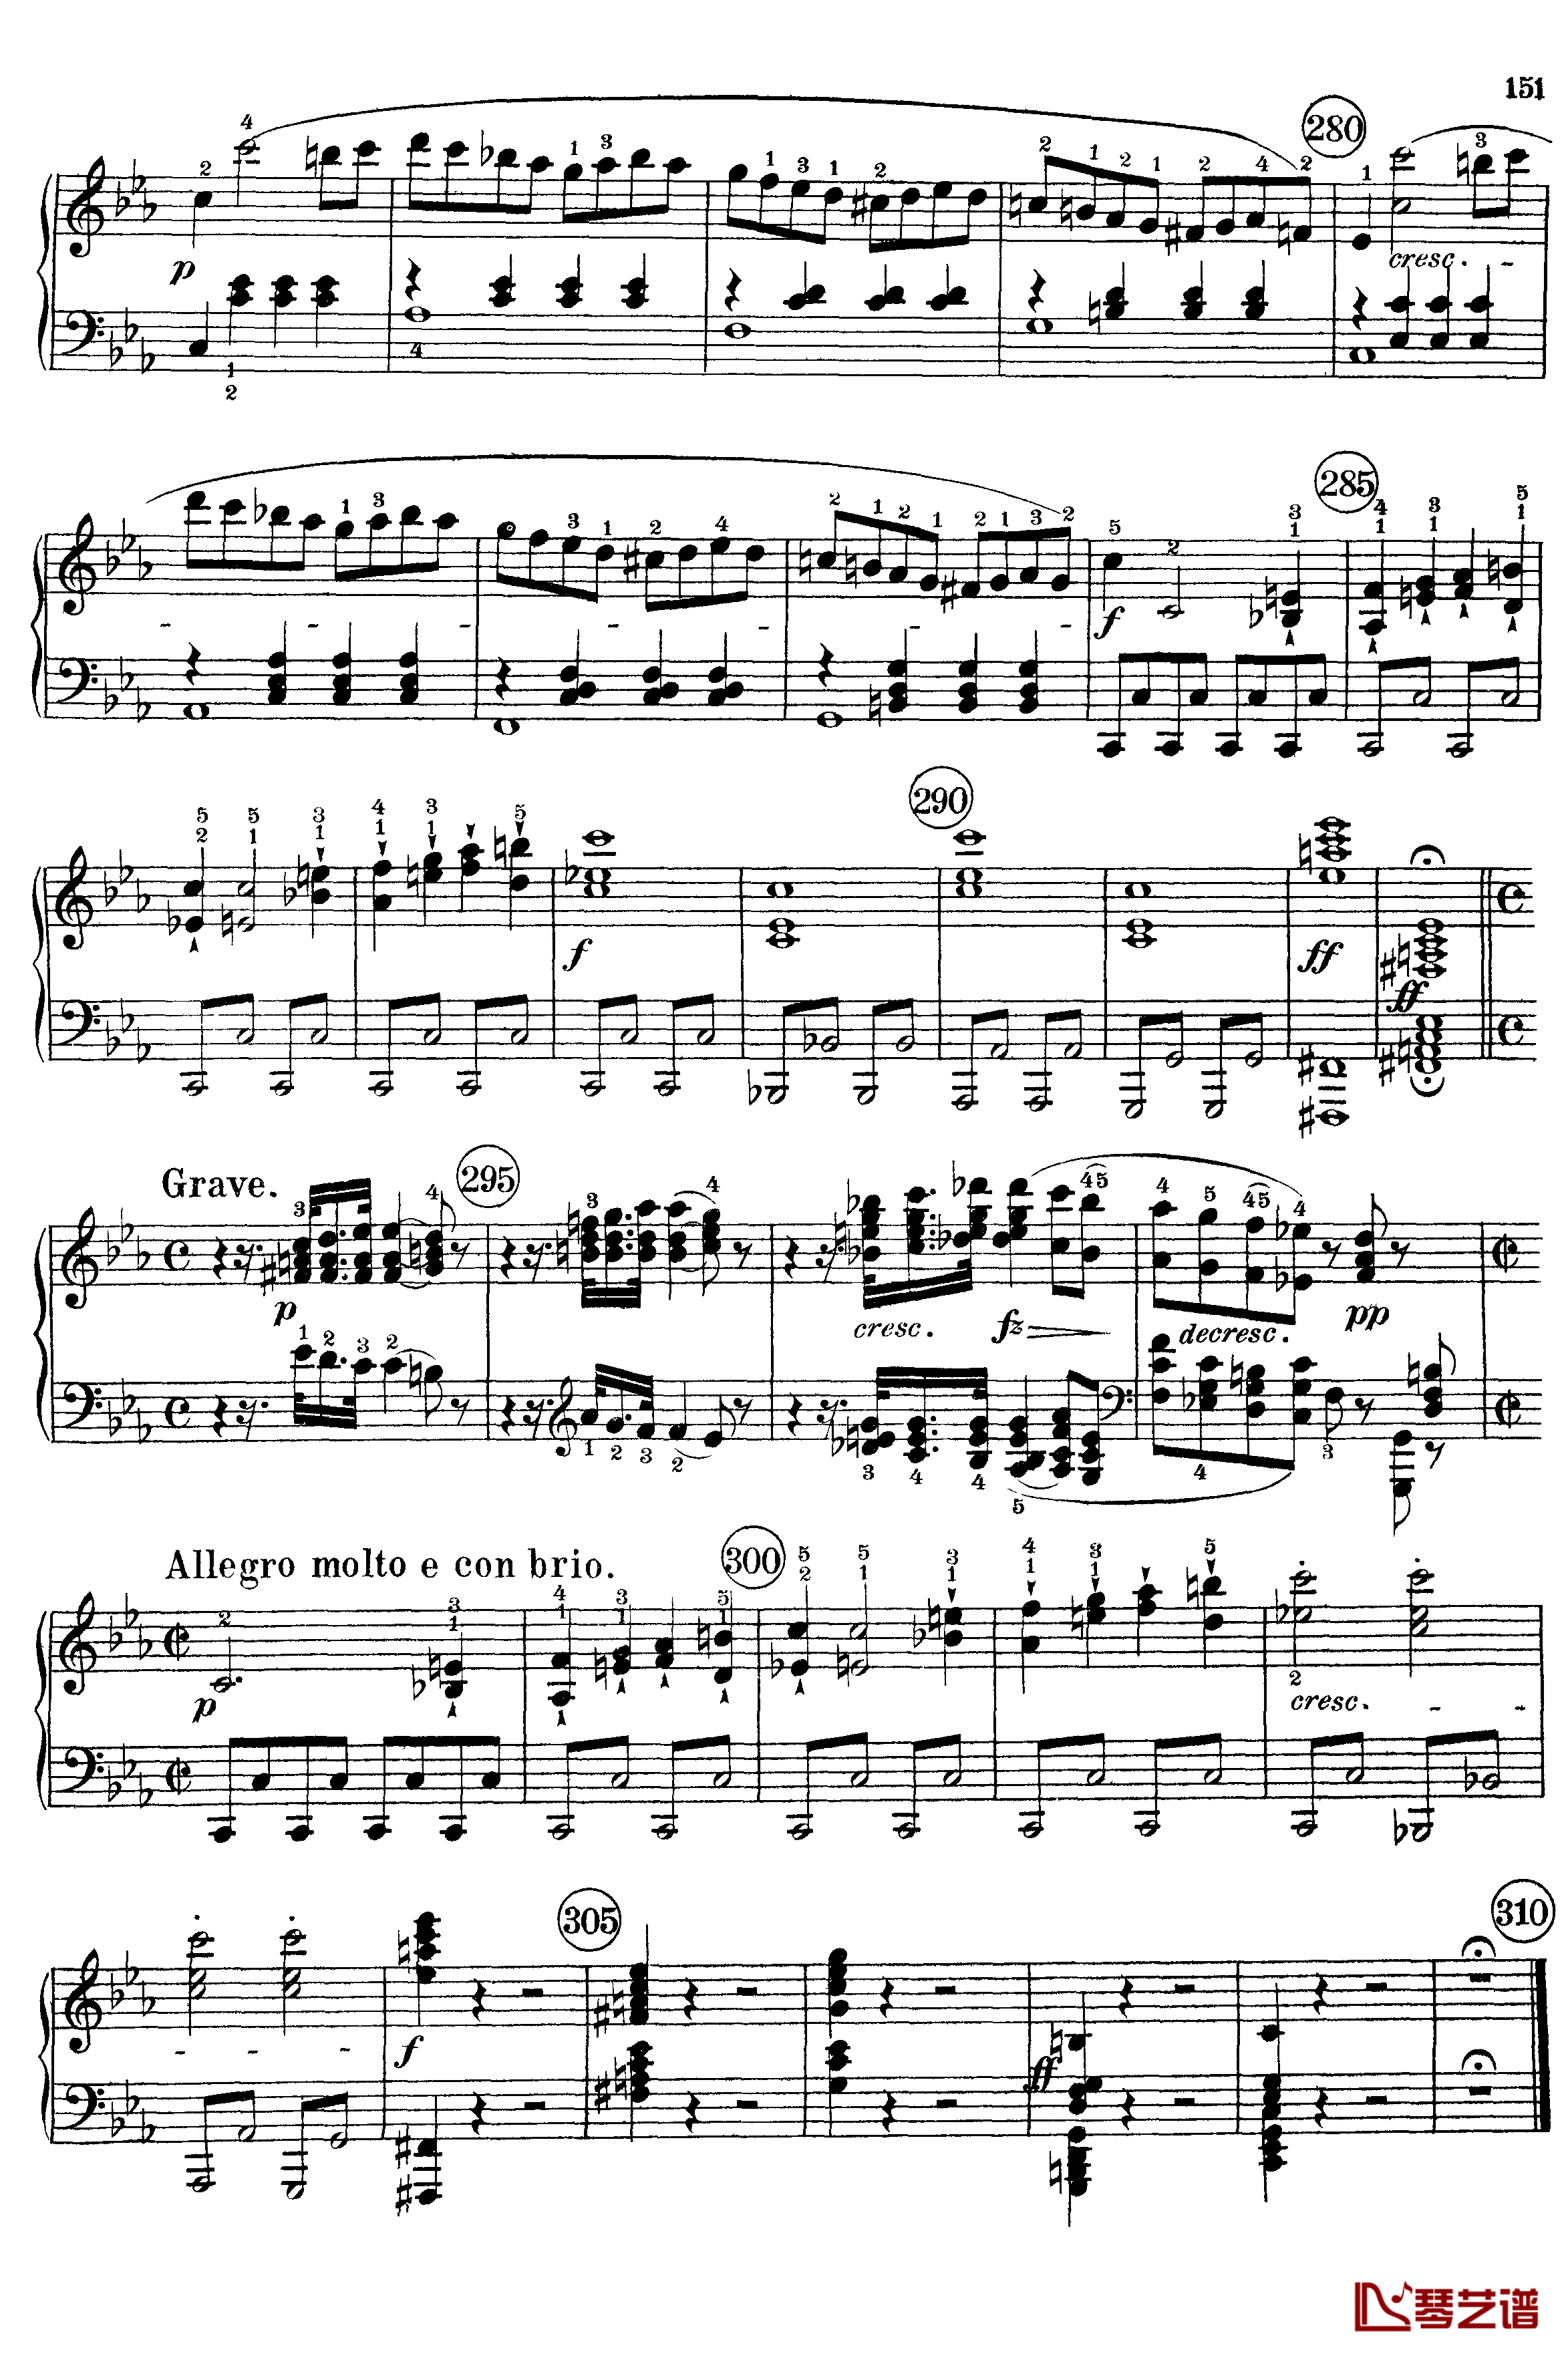 悲怆钢琴谱-c小调第八号钢琴奏鸣曲-全乐章-带指法版-贝多芬-beethoven9